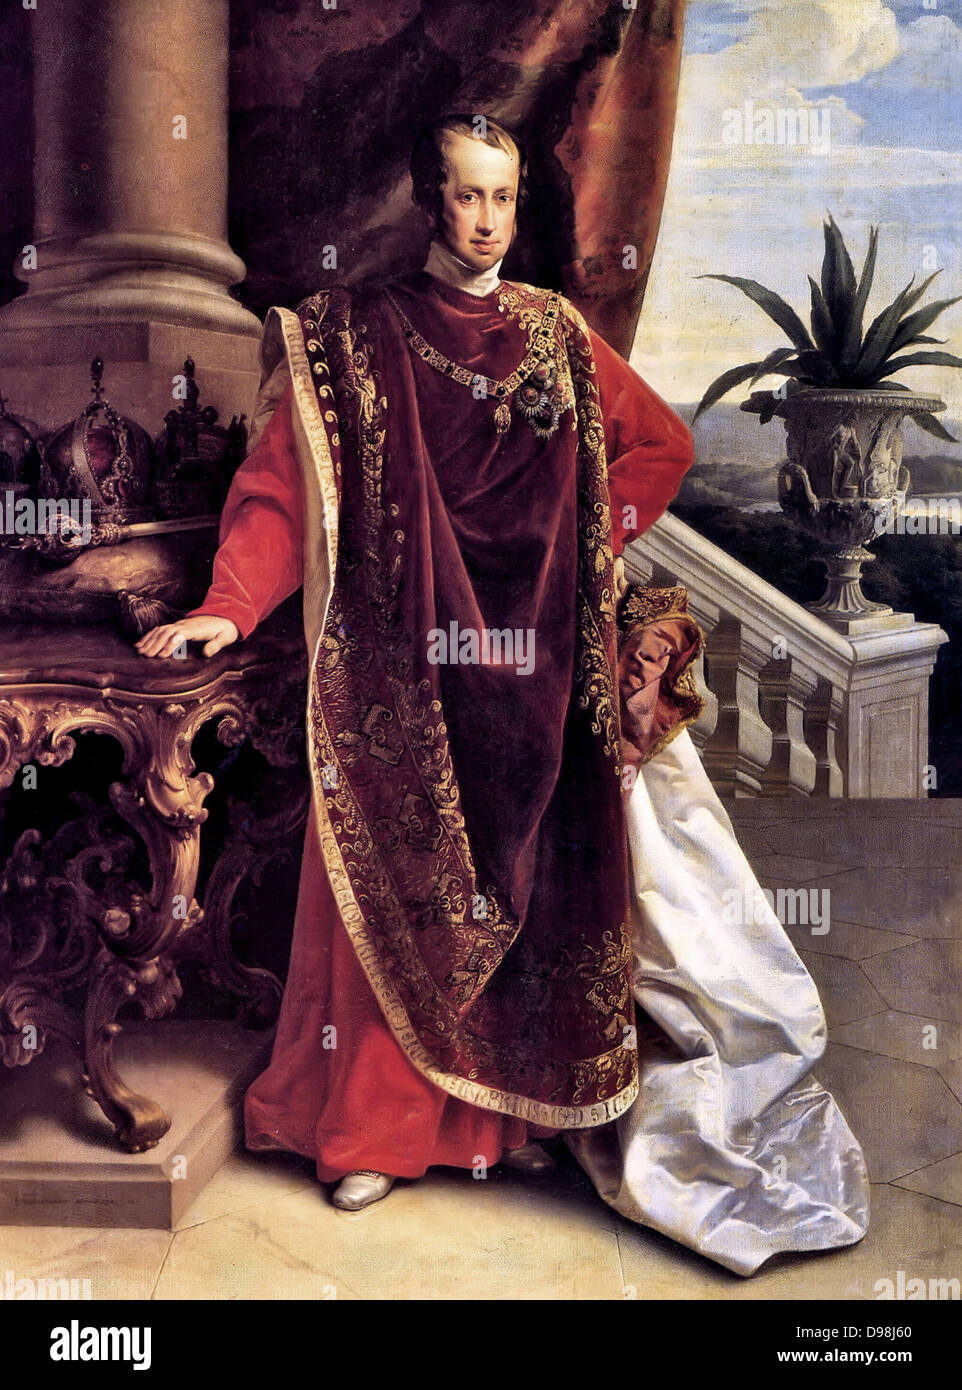 Ferdinand I (19 avril 1793 - 29 juin 1875) fut Empereur d'Autriche, Président de la Confédération germanique, roi de Hongrie et de Bohême (comme Ferdinand V), ainsi que les colonies à partir de la mort de son père, François II, Saint Empereur Romain, jusqu'à son abdication après les révolutions de 1848. Banque D'Images